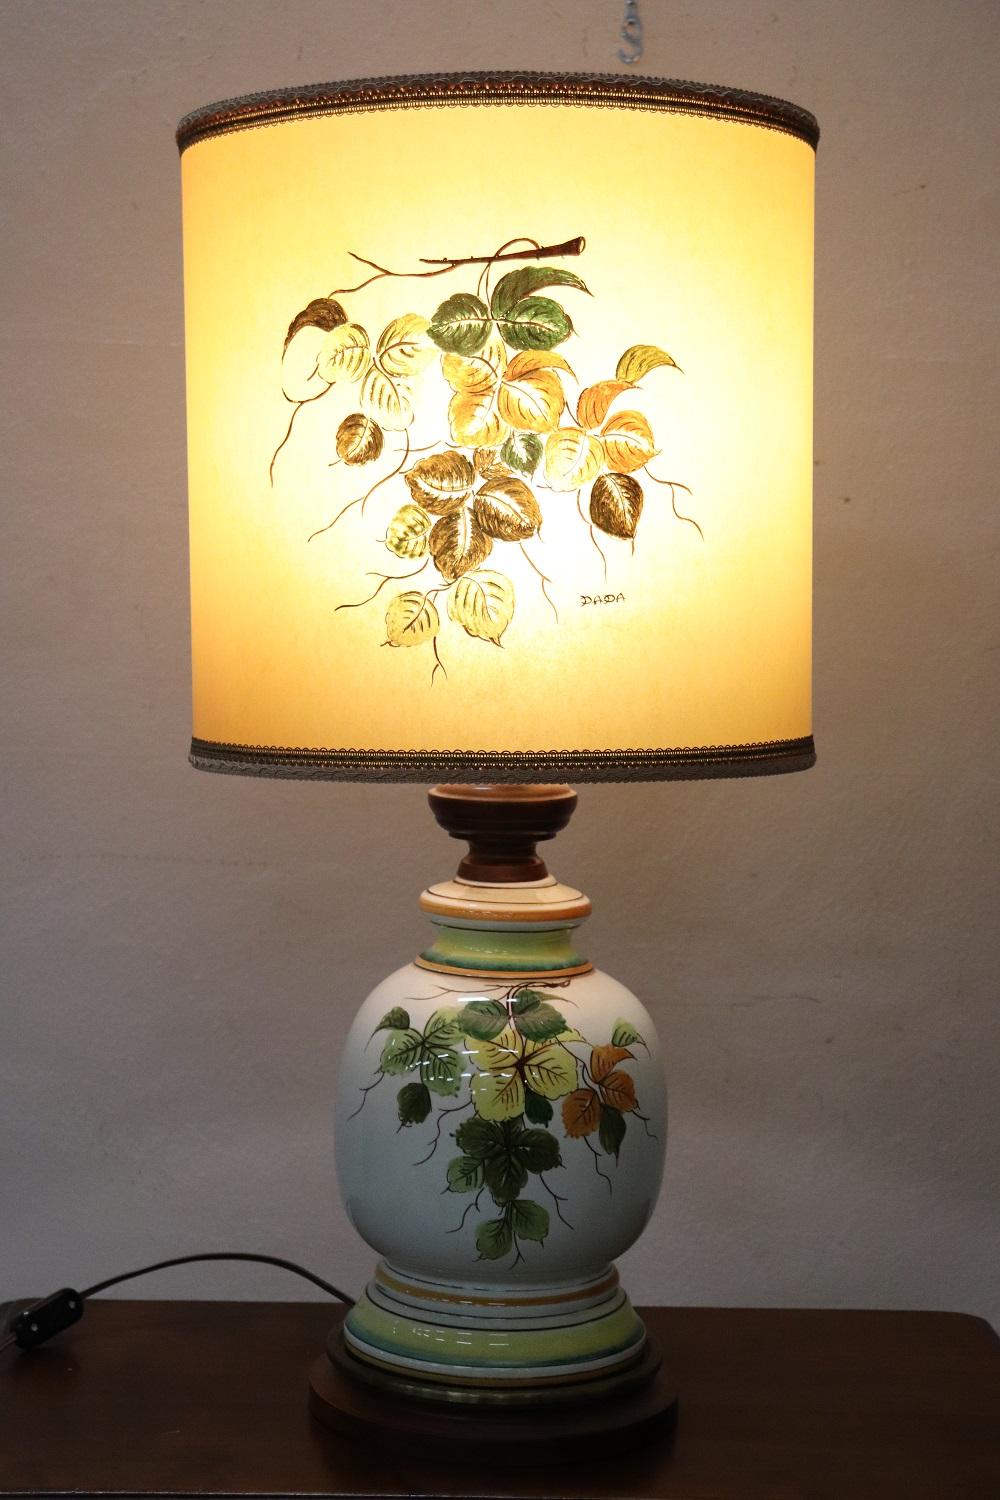 Schöne Tischlampe Vintage italienische Herstellung. Schöne florale handgemalte Dekoration. Diese Lampe ist ein wahres Kunstwerk.